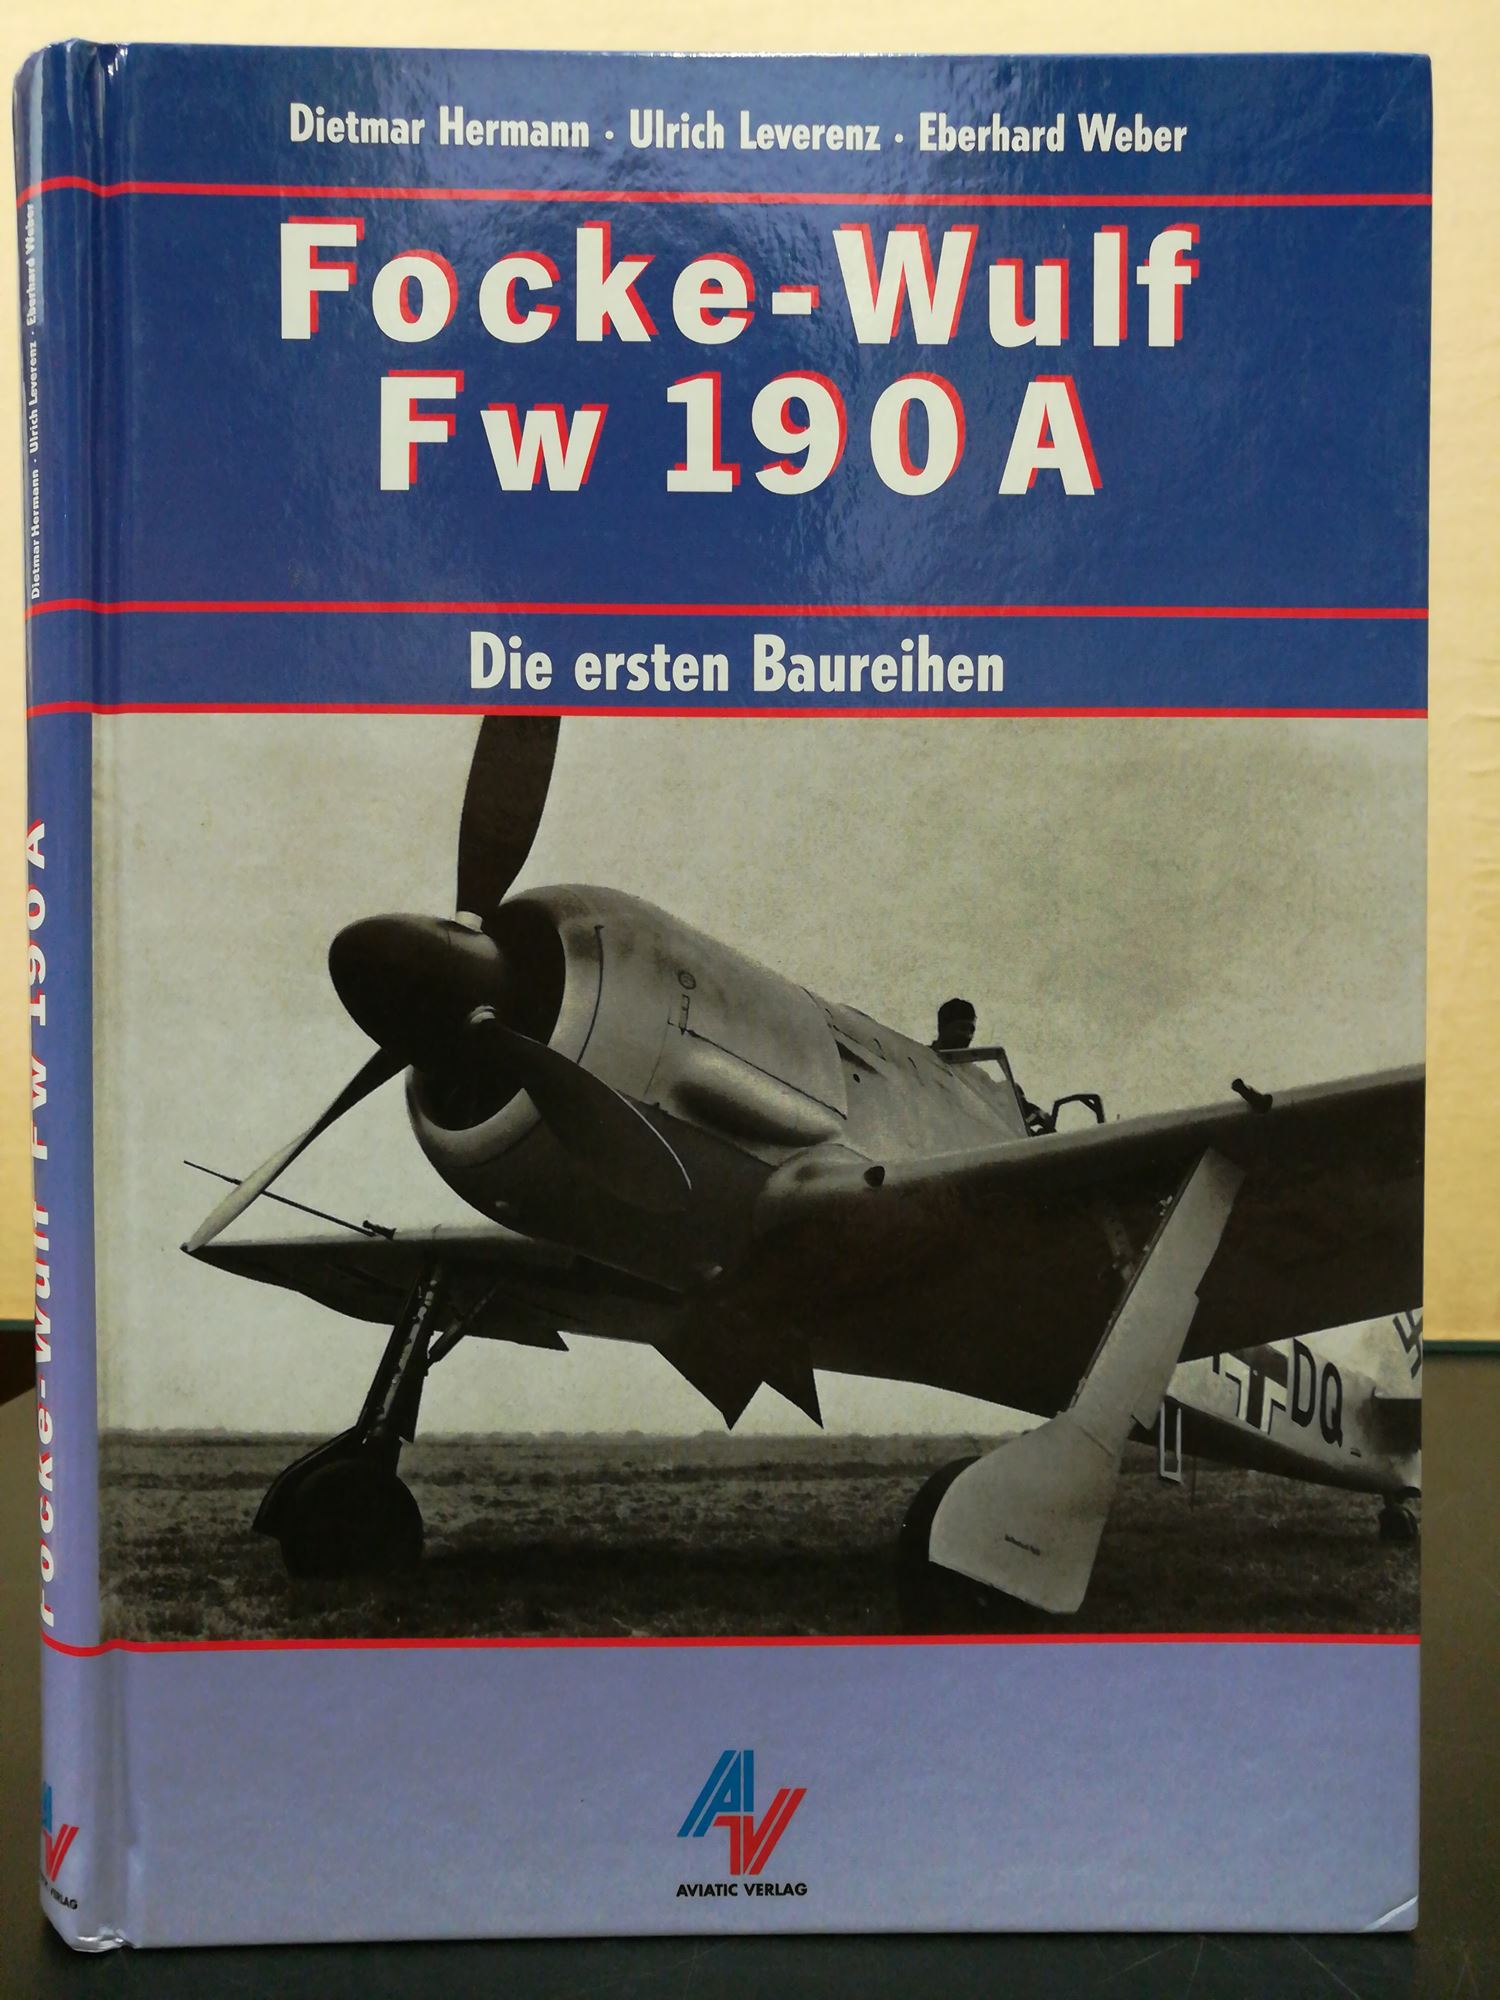 Focke-Wulf Fw 190 A / Die ersten Baureihen - Harmann, Dietmar u. Ulrich Leverenz und Eberhard Weber